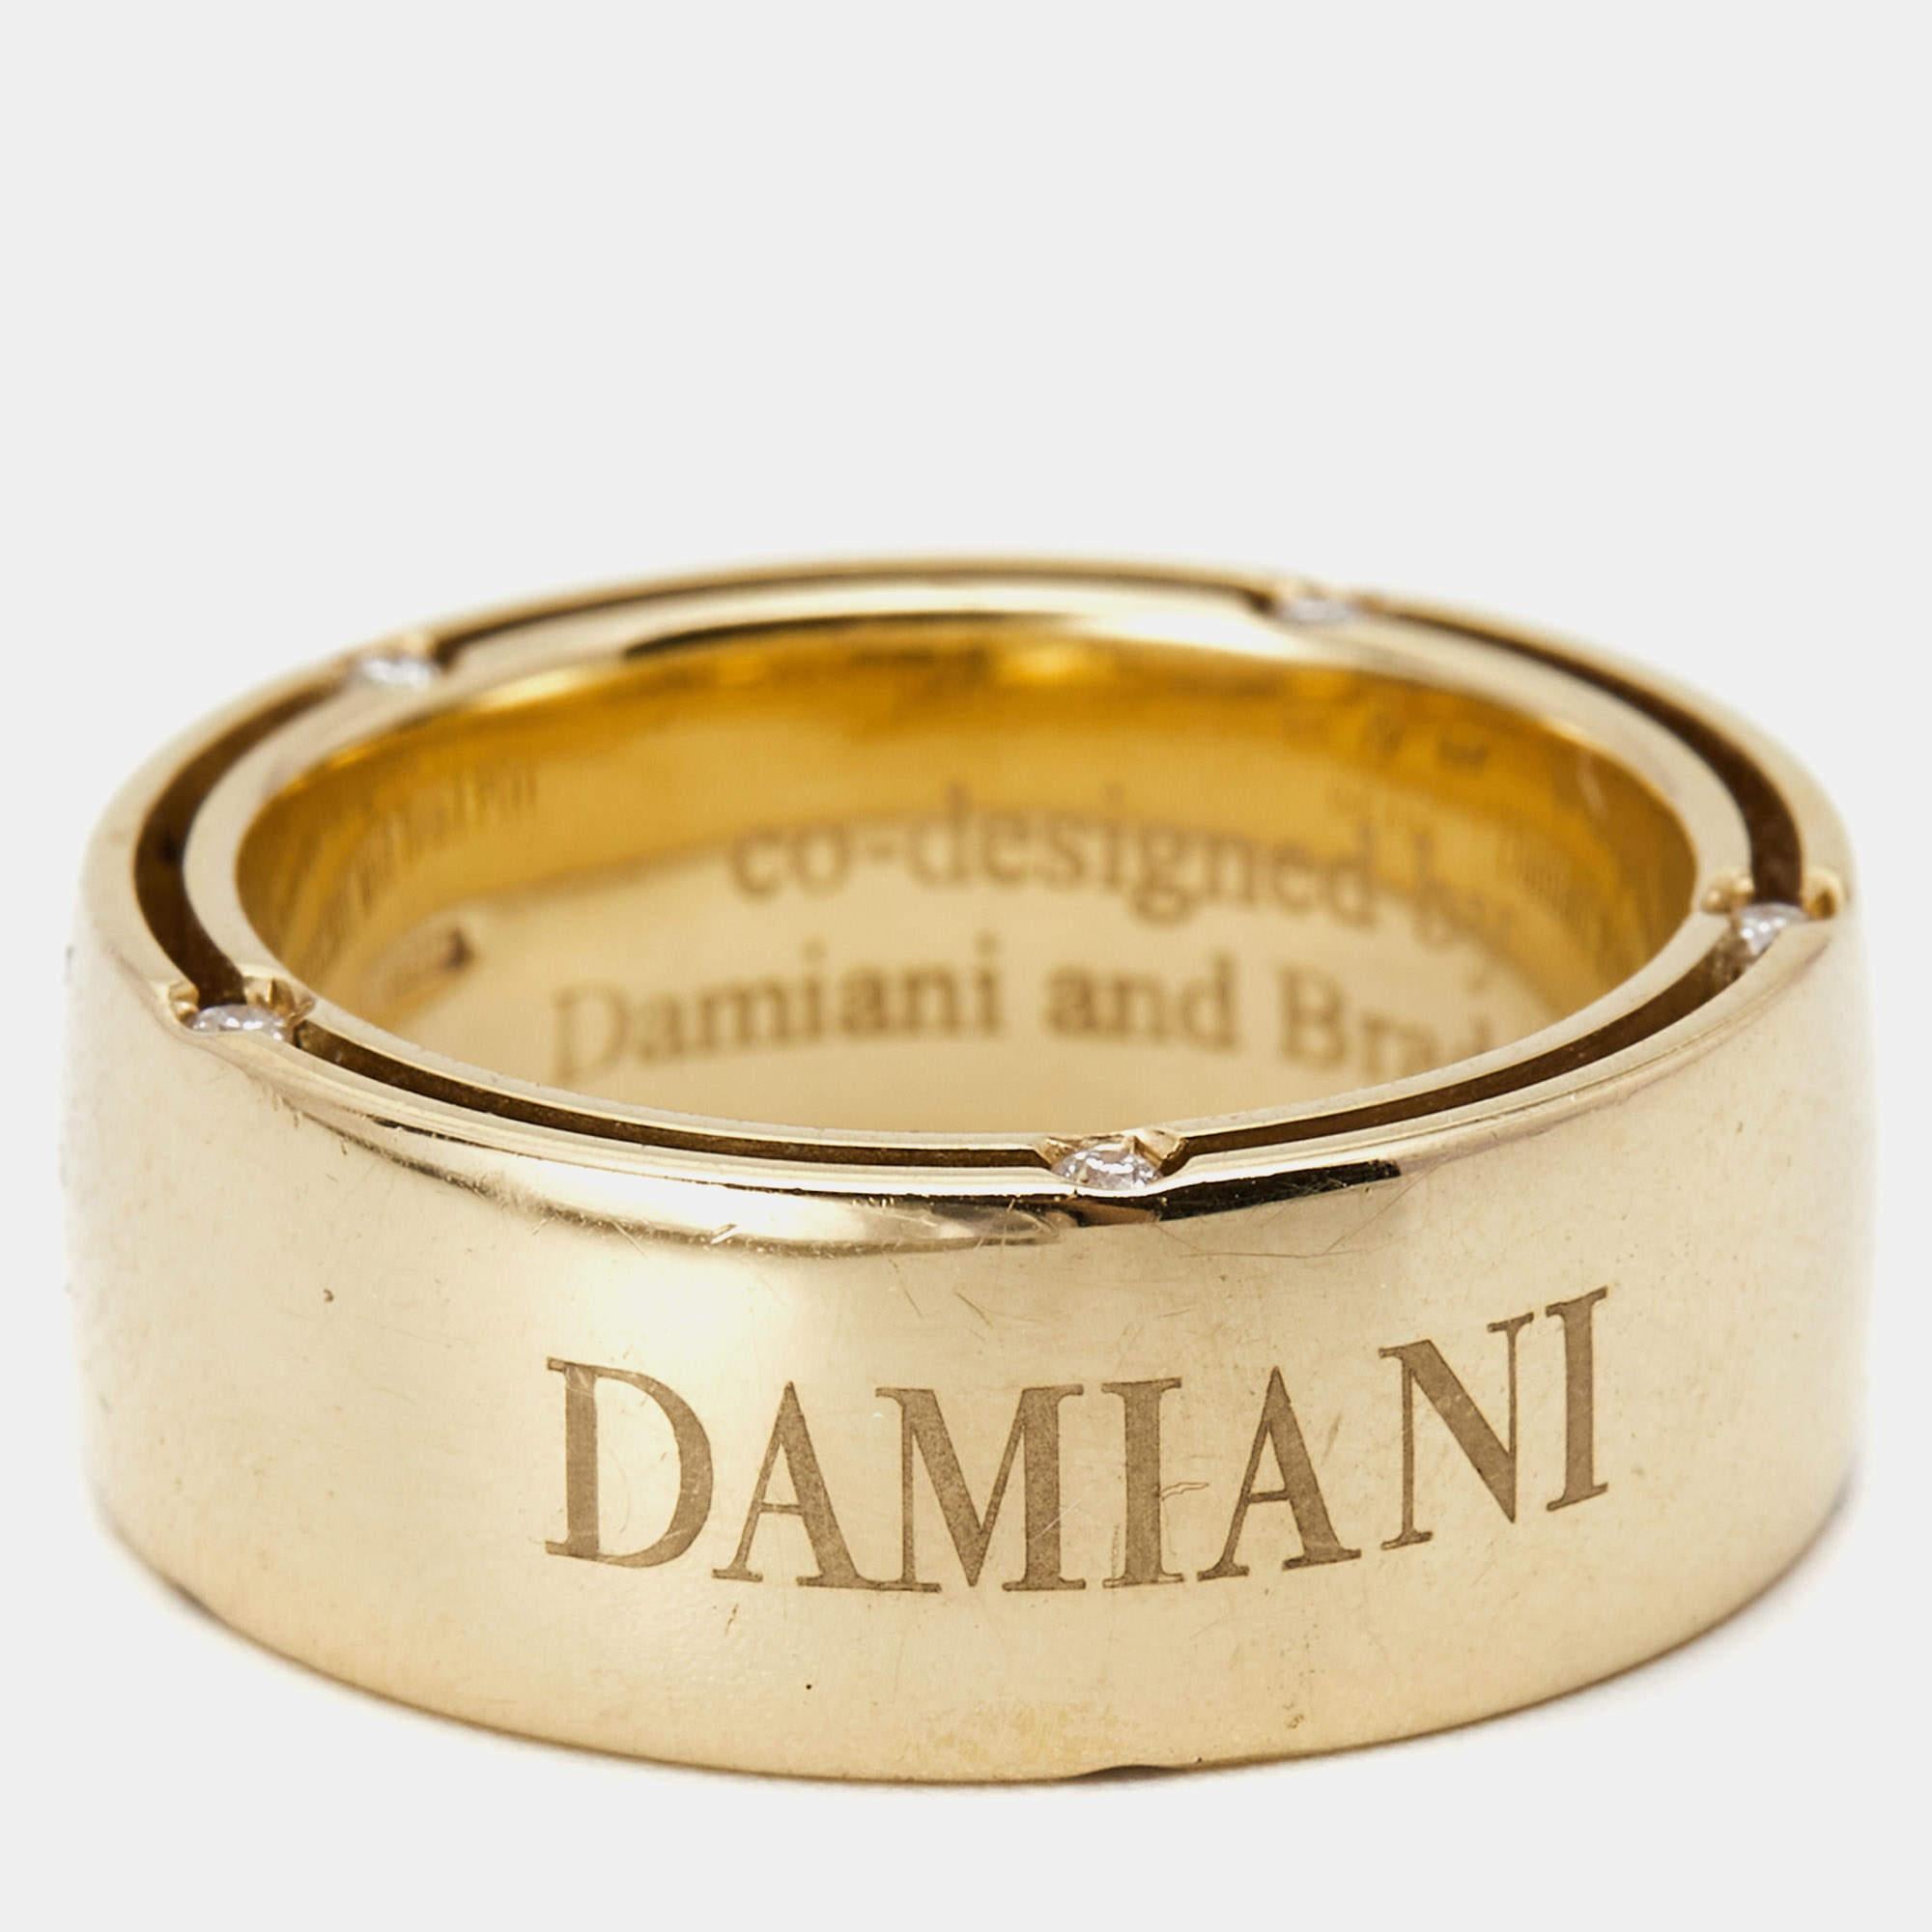 Uncut Damiani Damiani & Brad Pitt Diamond 18k Yellow Gold Ring Size 50 For Sale